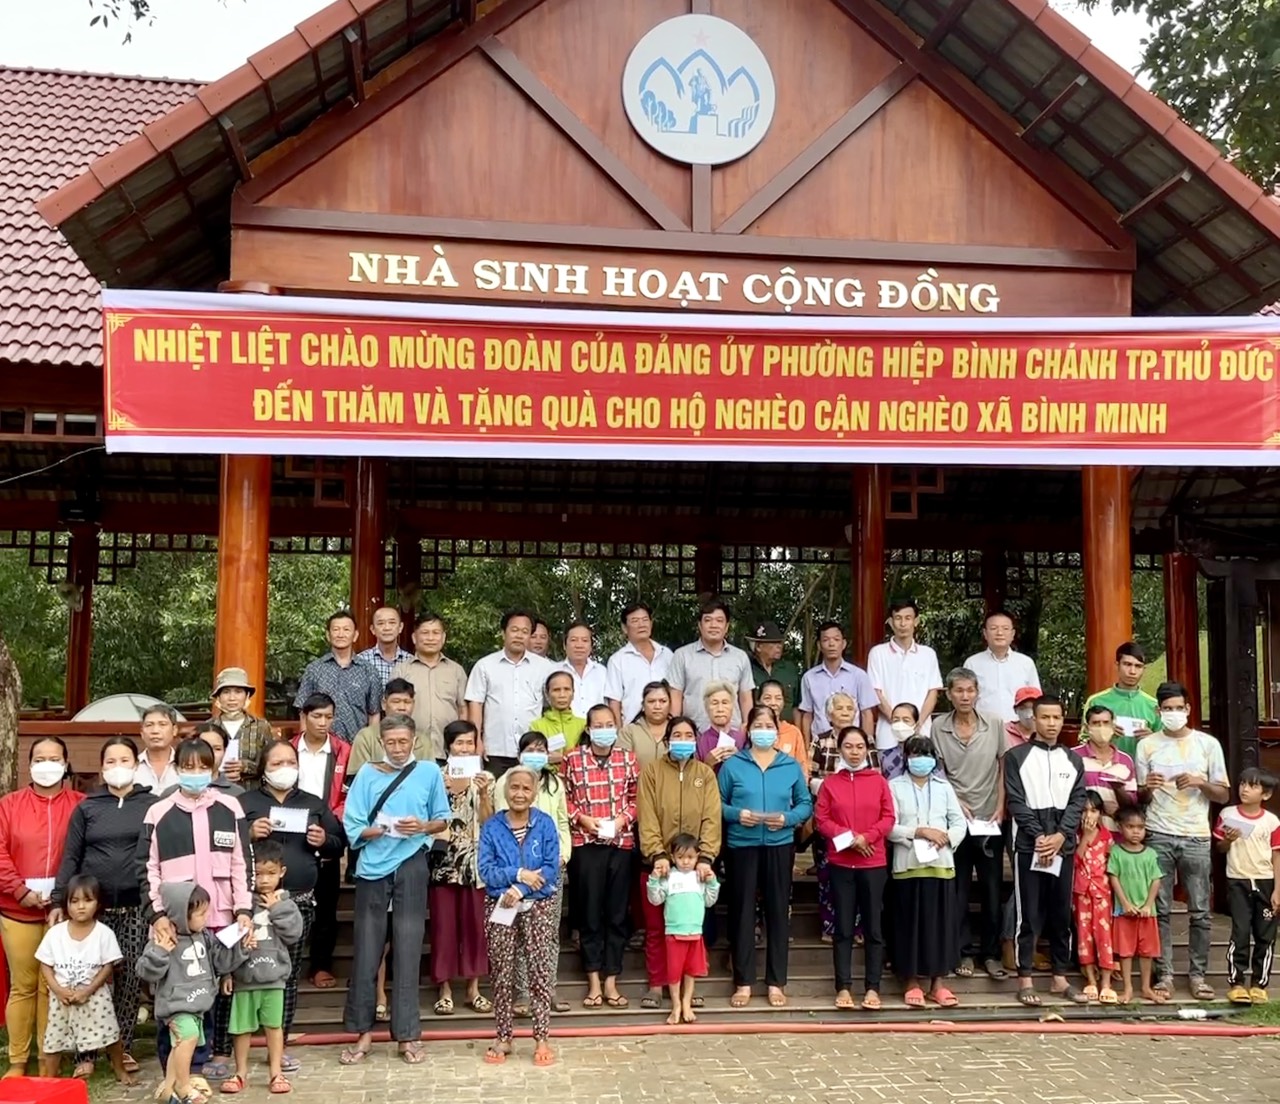 Bù Đăng: 60 phần quà hỗ trợ hộ nghèo Khu bảo tồn văn hoá dân tộc S’Tiêng Sóc Bom Bo, Xã Bình Minh mùa giáp hạt.